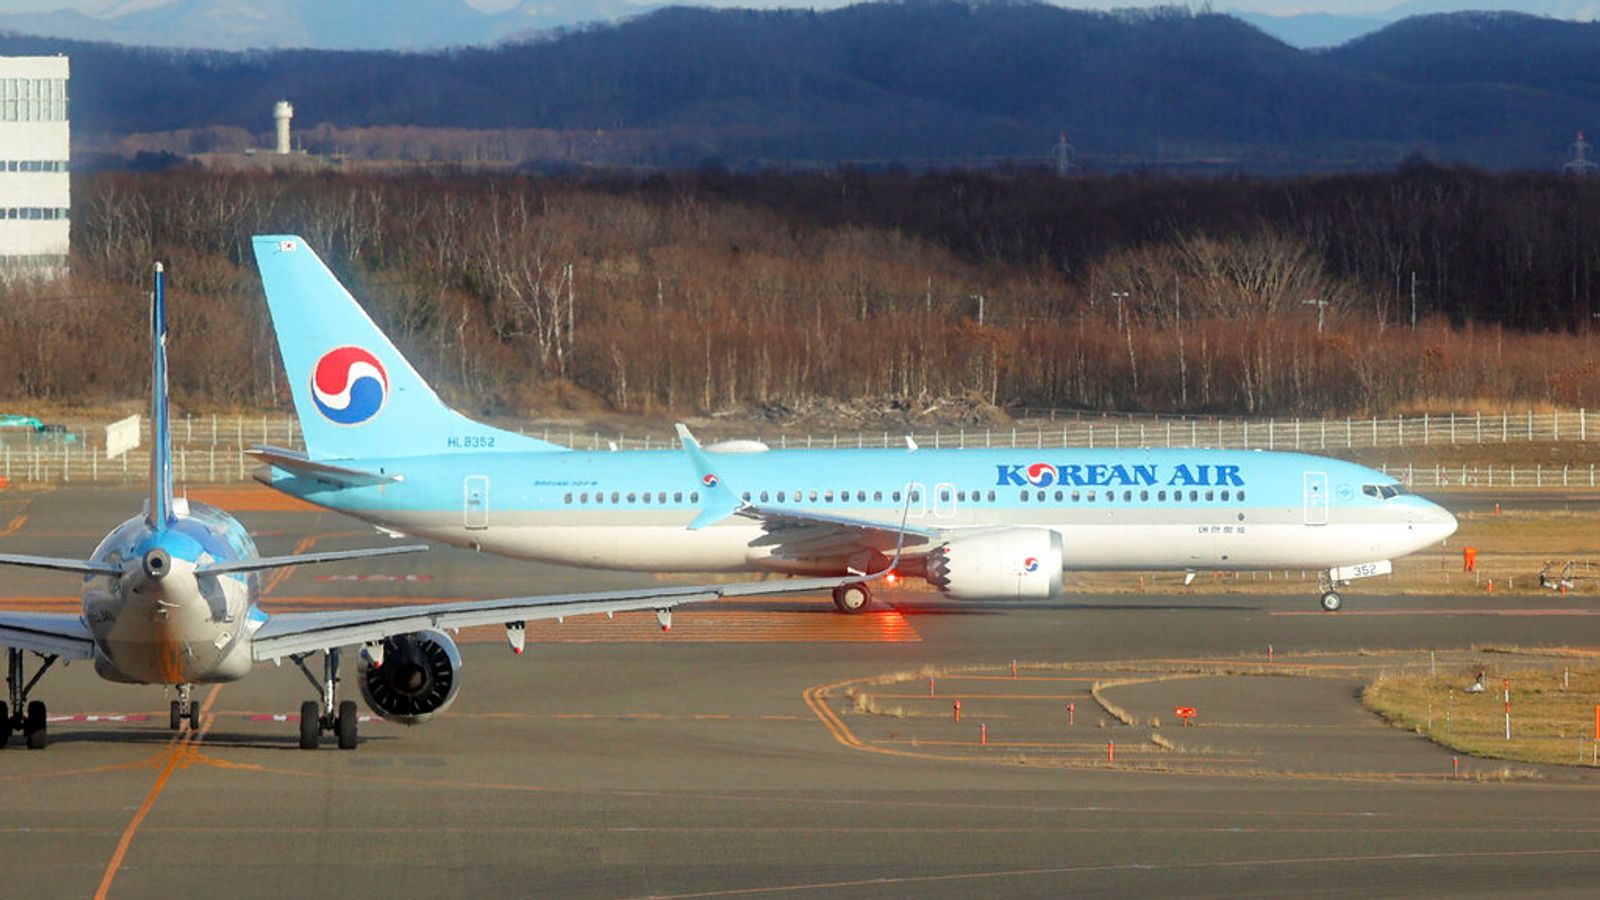 Япония: Самолети на Cathay Pacific и Korean Air се захващат на ново летище Chitose - оставяйки дупка в крилото